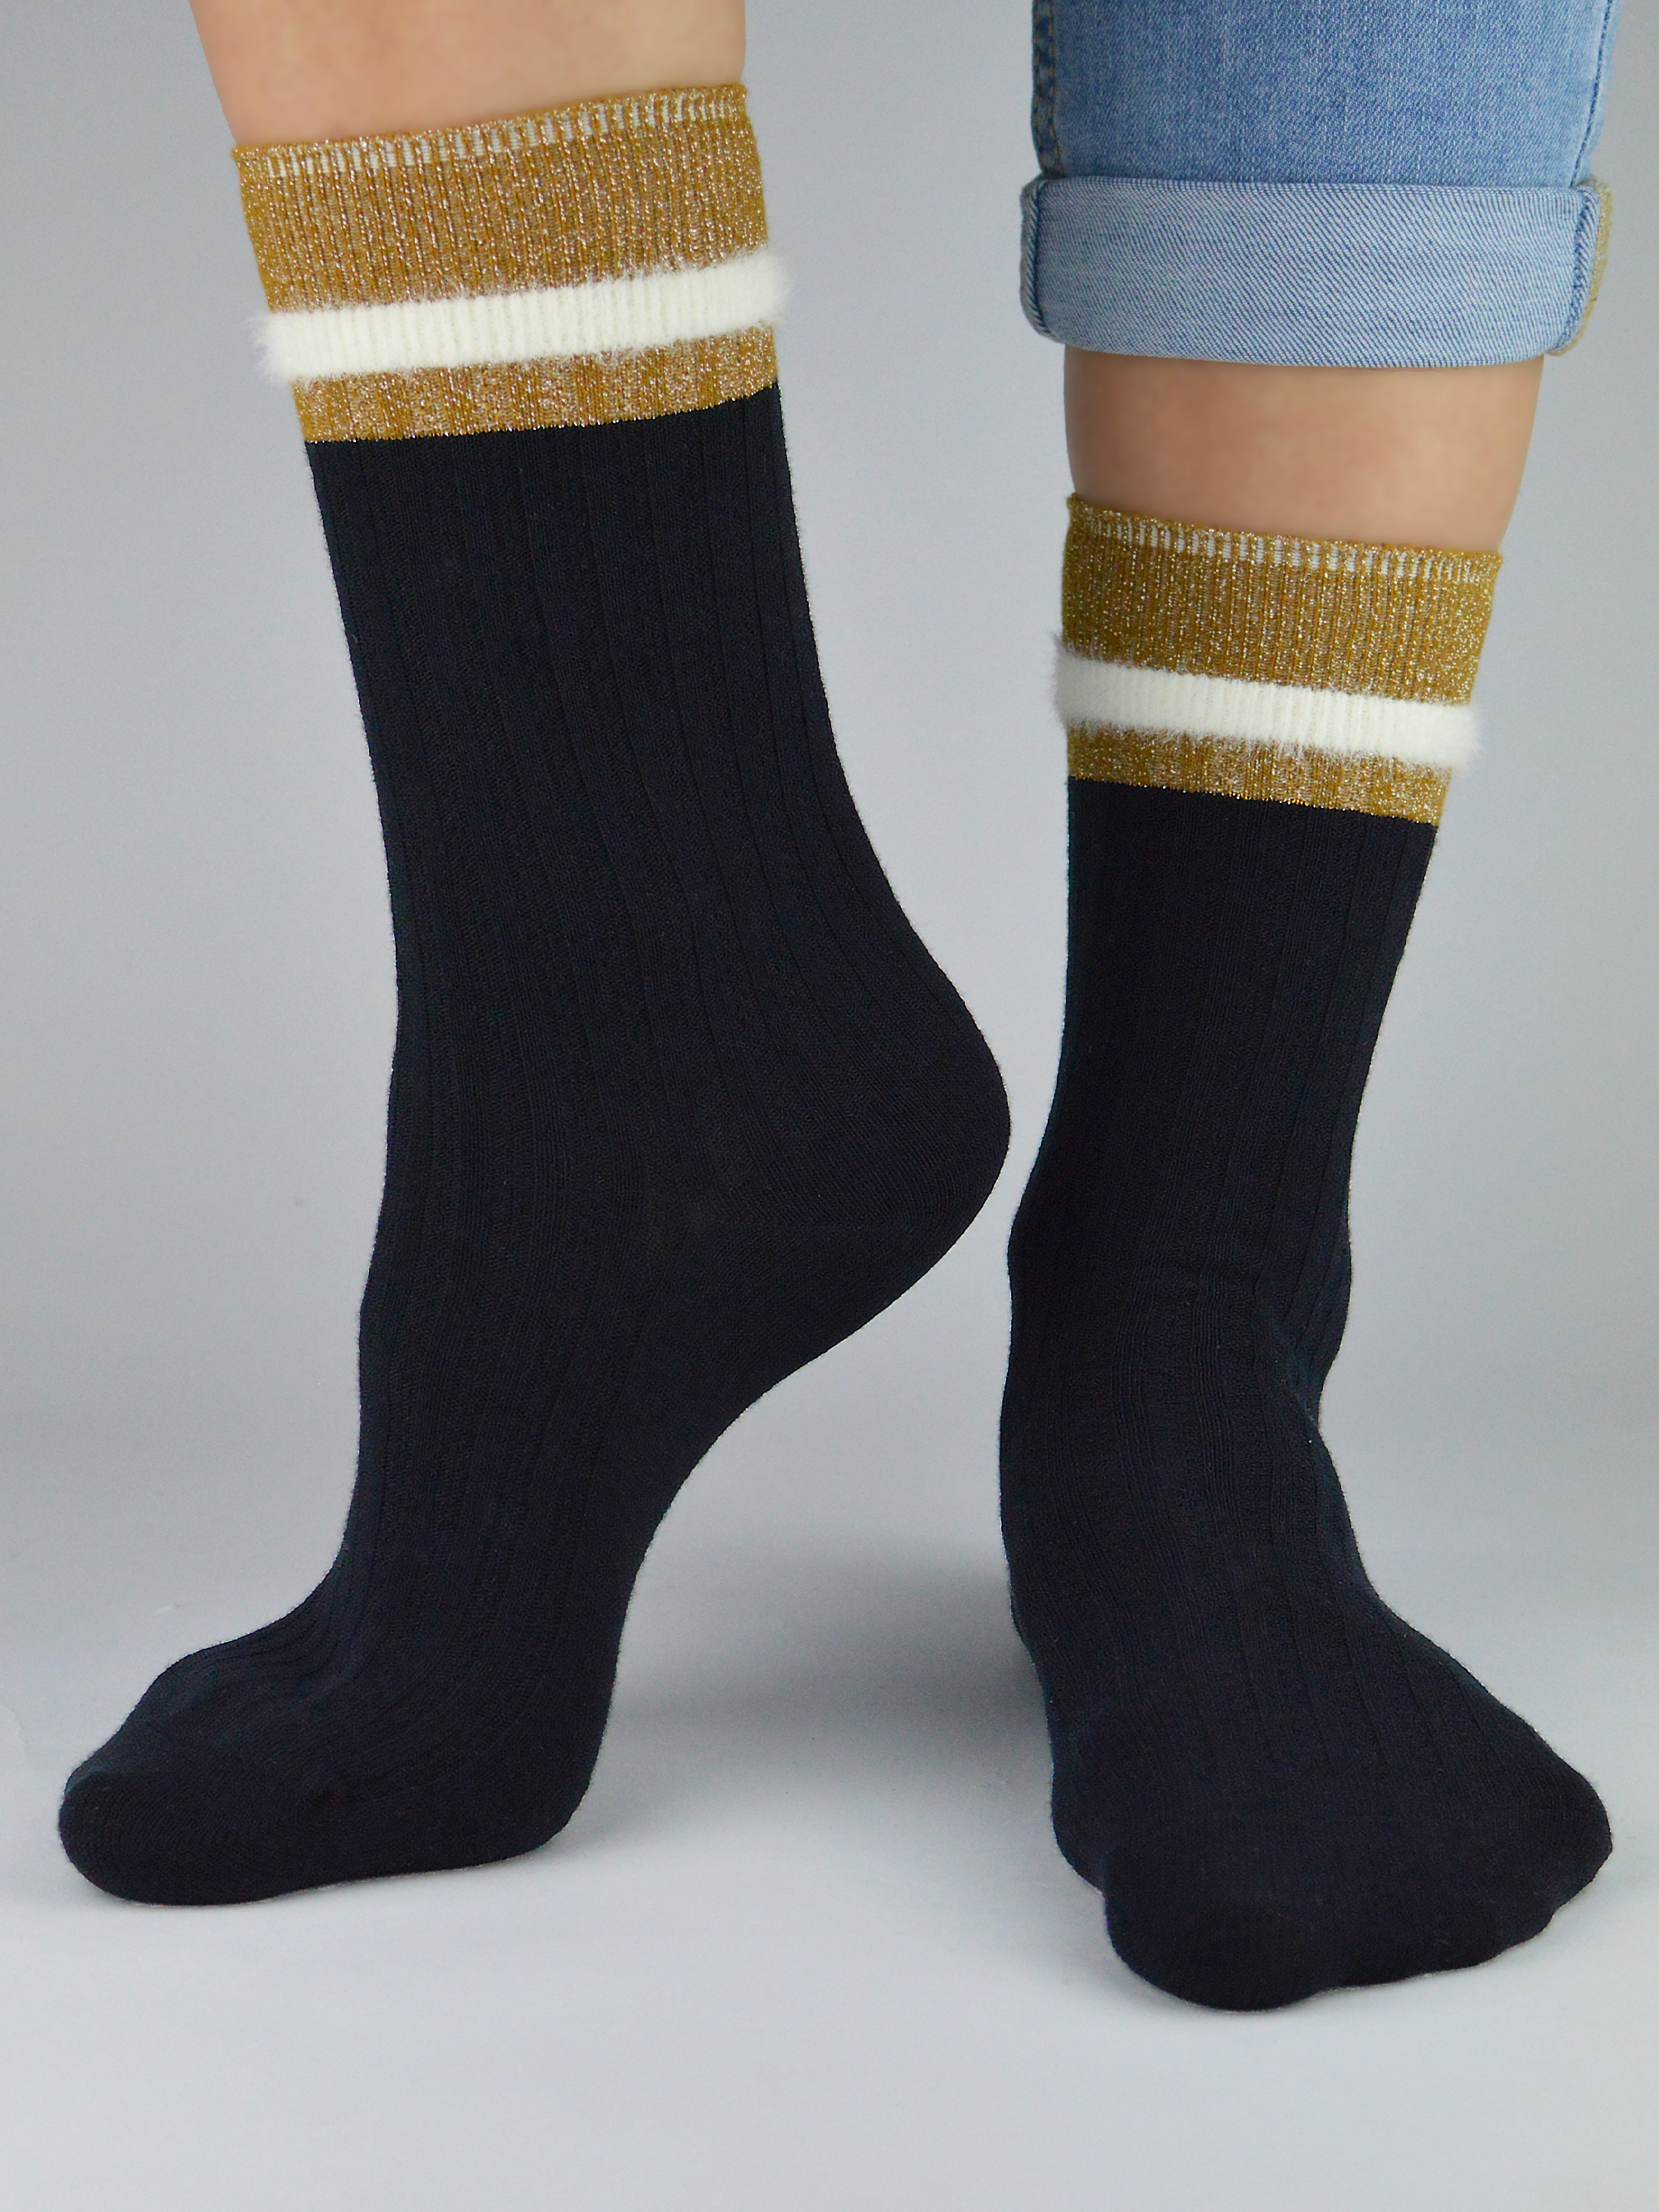 NOVITI Woman's Socks SB050-W-01